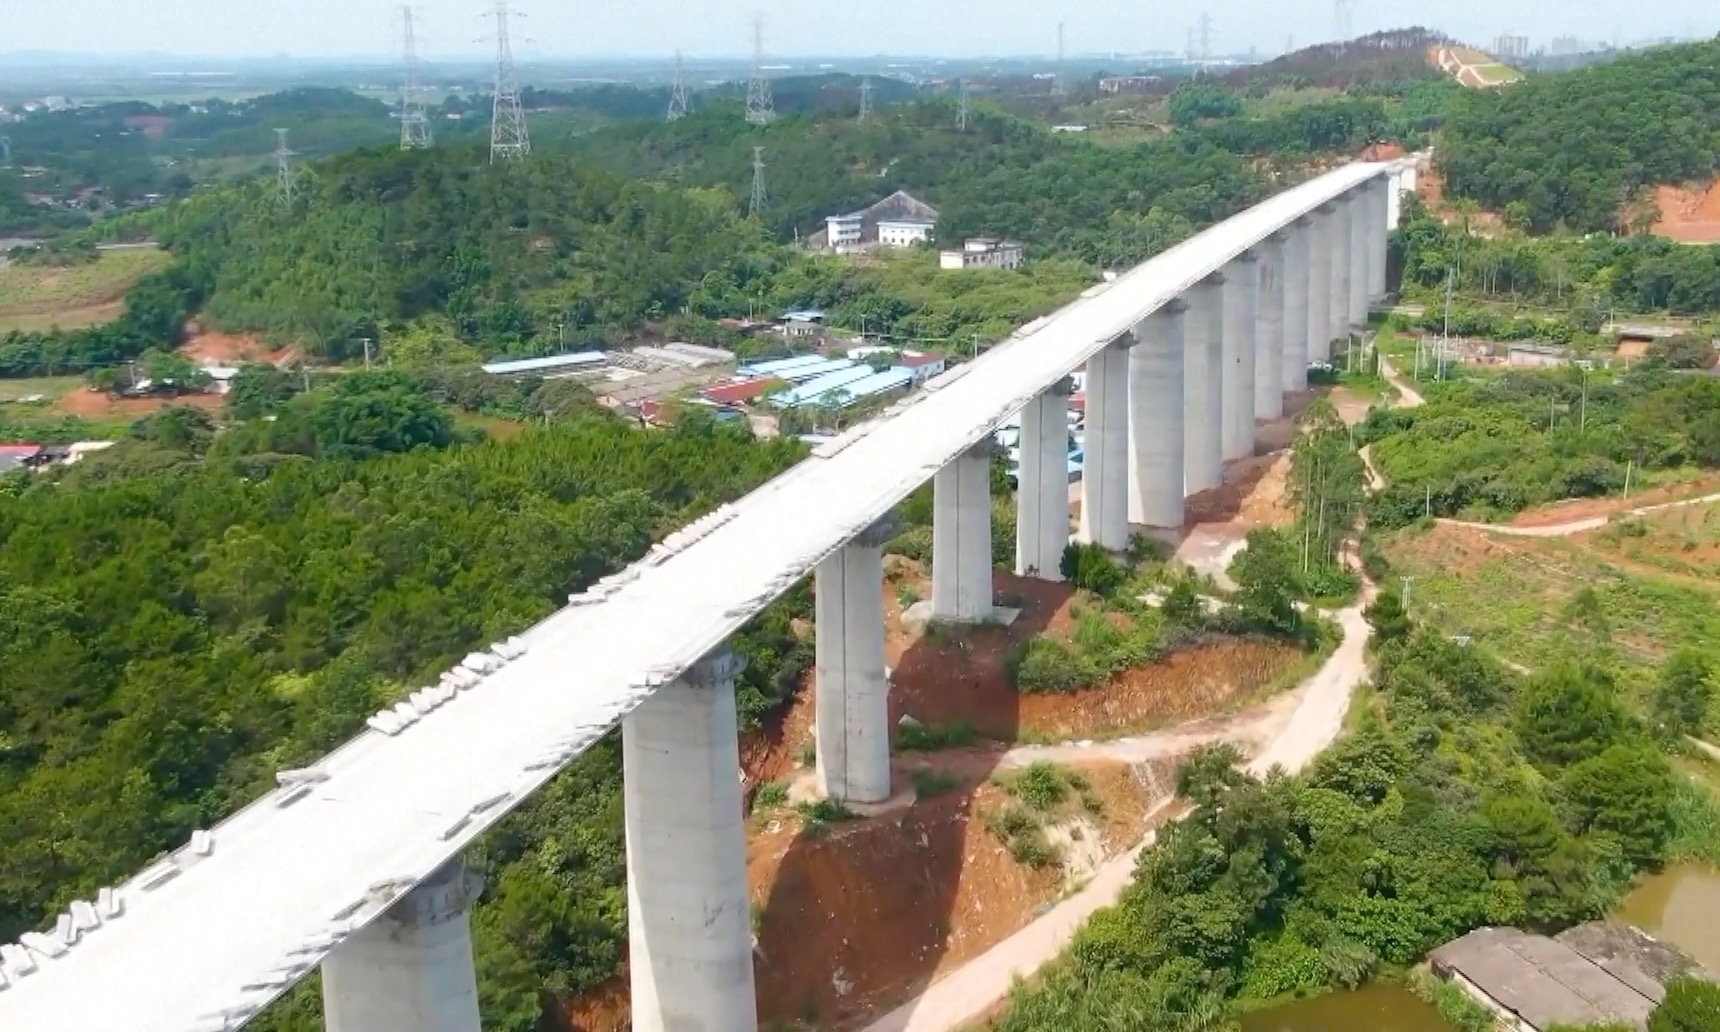 Trung Quốc sắp hoàn thành đường sắt cao tốc tới biên giới Việt - Trung